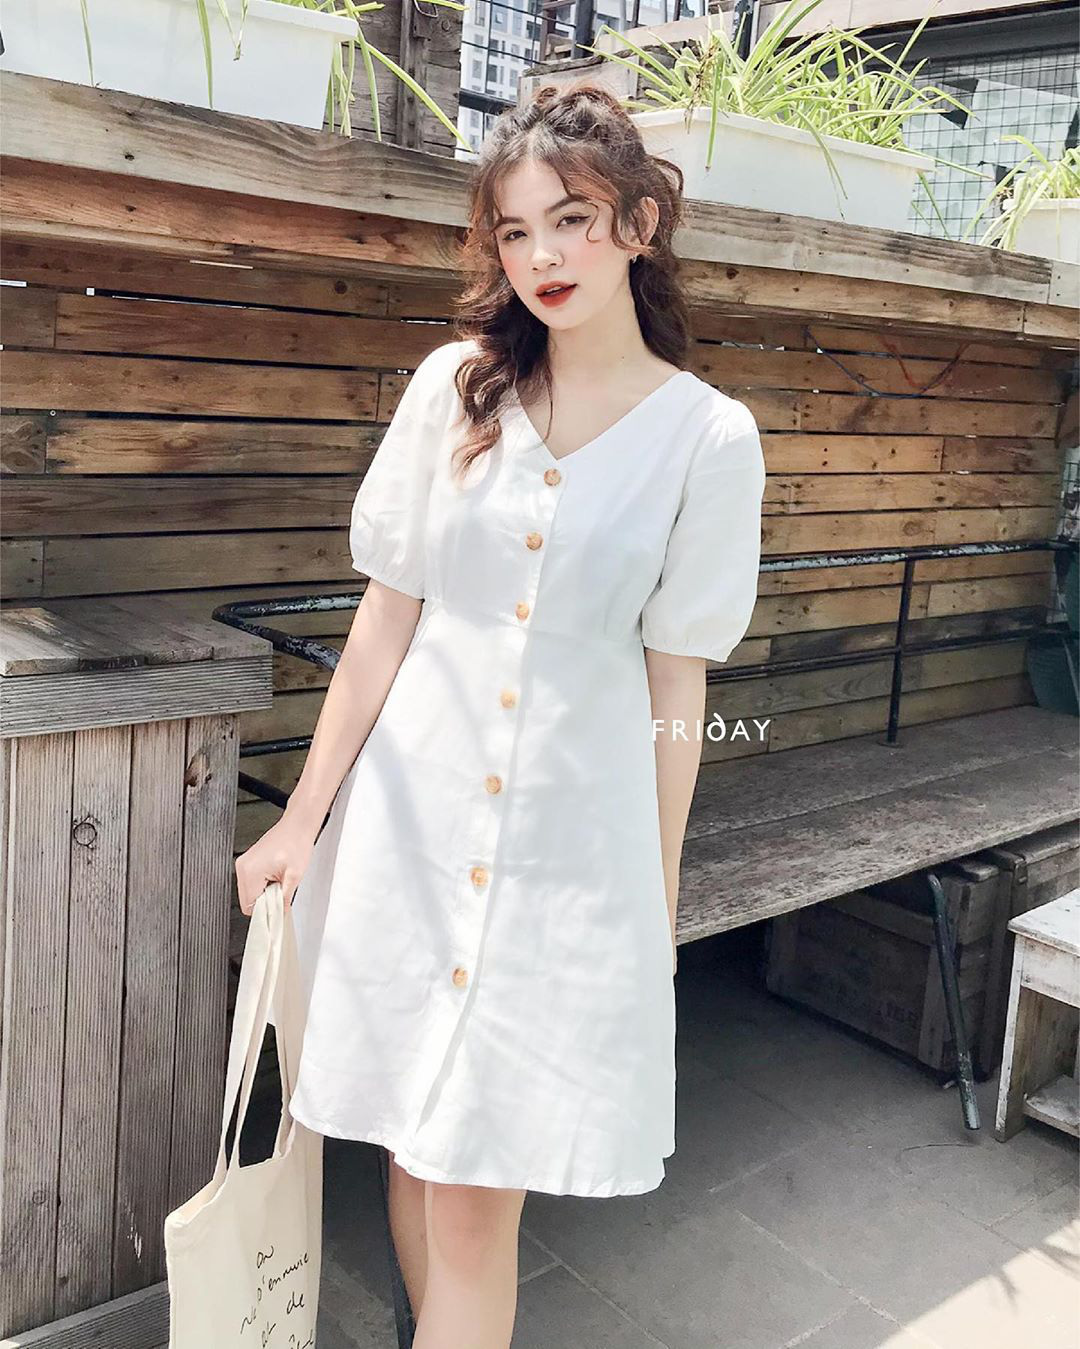 Đầm váy nữ maxi nhún eo với màu sắc rực rỡ sáng da thích hợp cho các nàng đi  chơi đi biển  Shopee Việt Nam